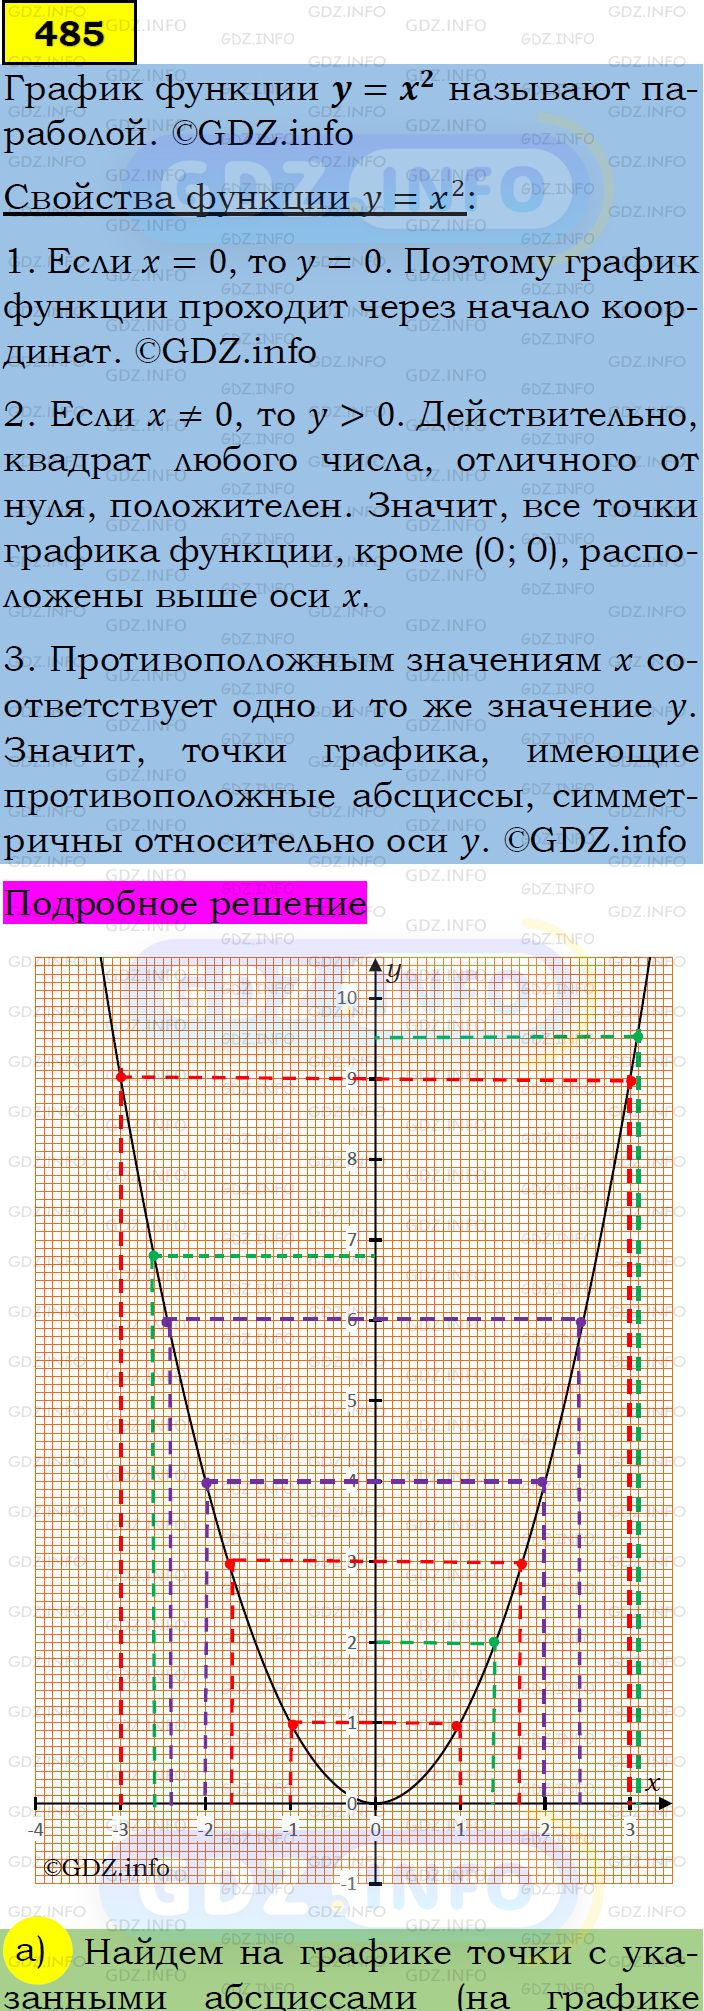 Фото подробного решения: Номер задания №485 из ГДЗ по Алгебре 7 класс: Макарычев Ю.Н.